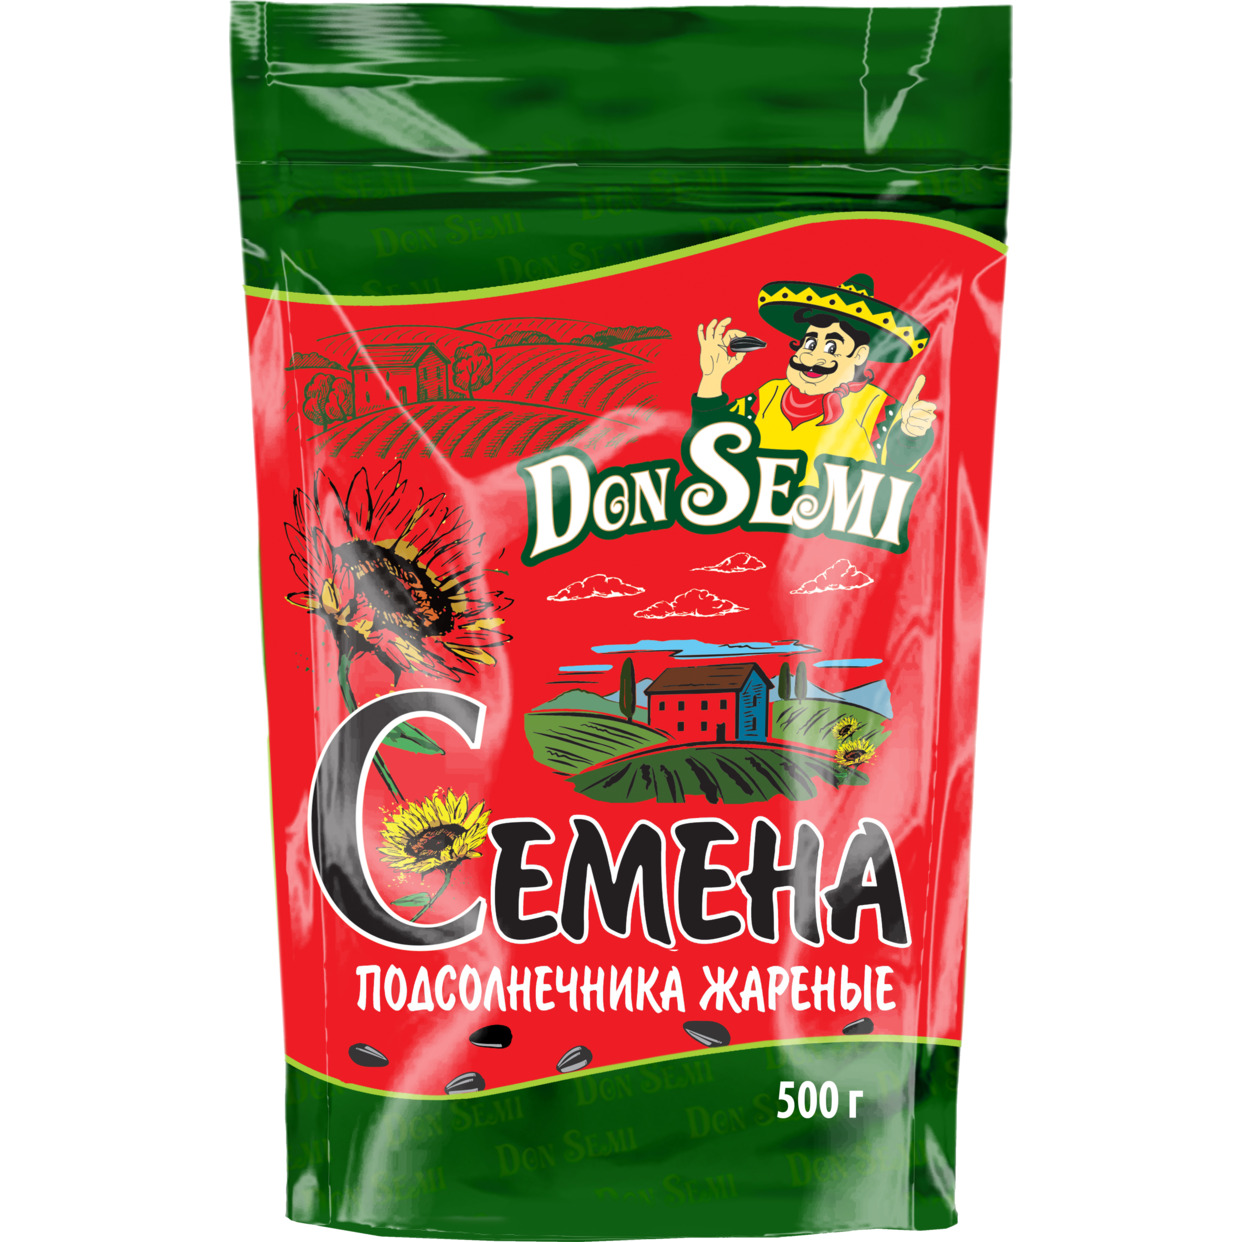 Don’ Semi Семена подсолнечника жареные (дой-пак с замком зип-лок) 500 г по акции в Пятерочке